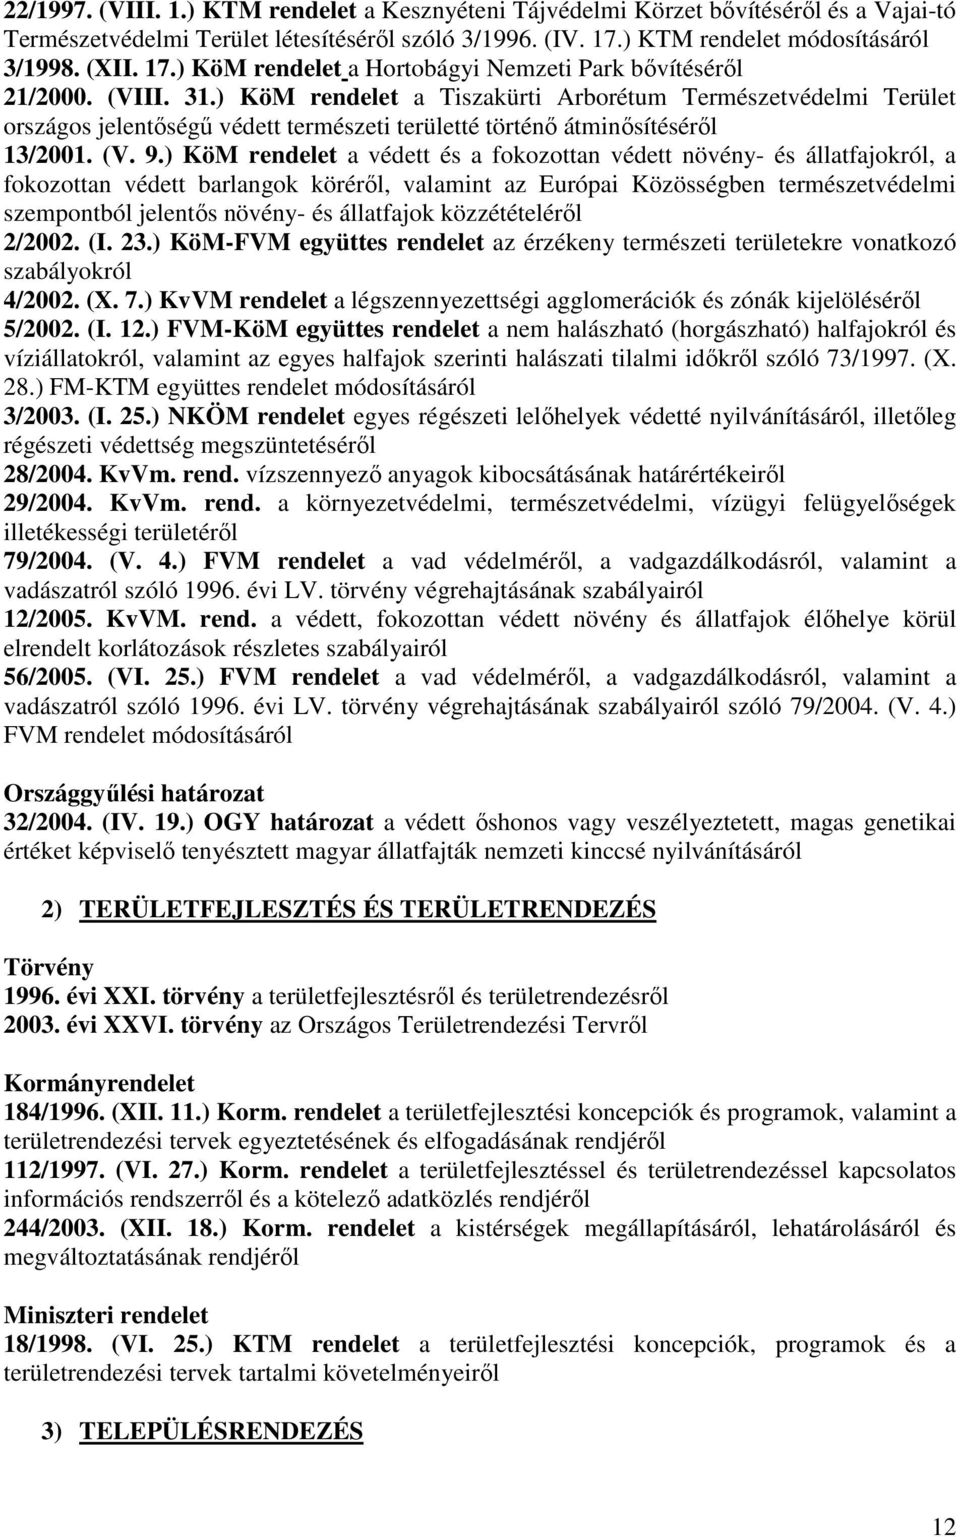 ) KöM rendelet a Tiszakürti Arborétum Természetvédelmi Terület országos jelentıségő védett természeti területté történı átminısítésérıl 13/2001. (V. 9.